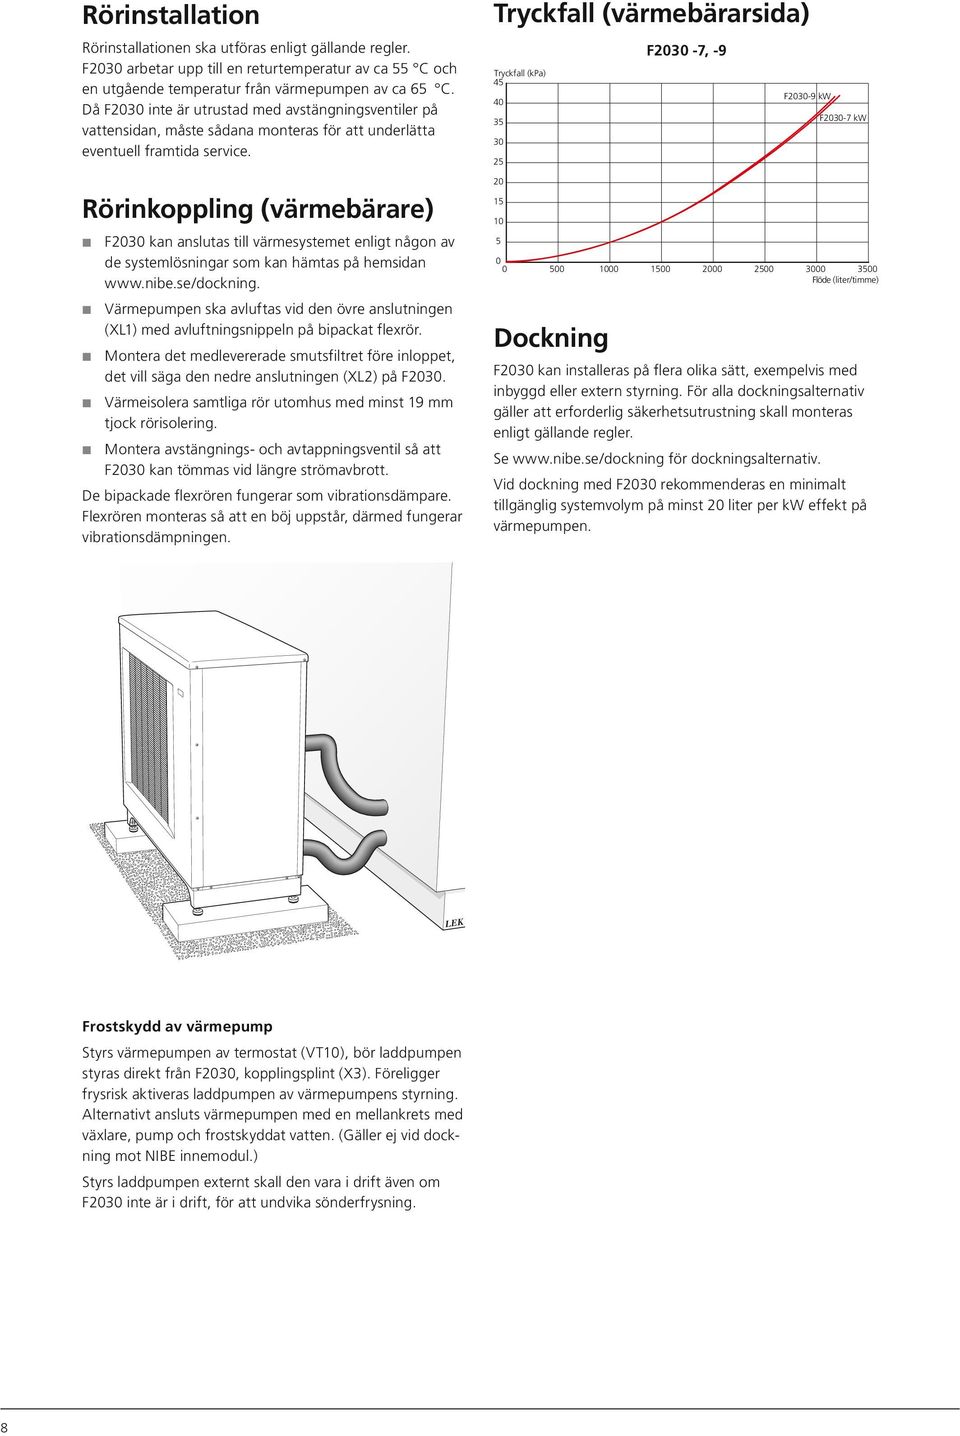 Rörinkoppling (värmebärare) F2030 kan anslutas till värmesystemet enligt någon av de systemlösningar som kan hämtas på hemsidan www.nibe.se/dockning.